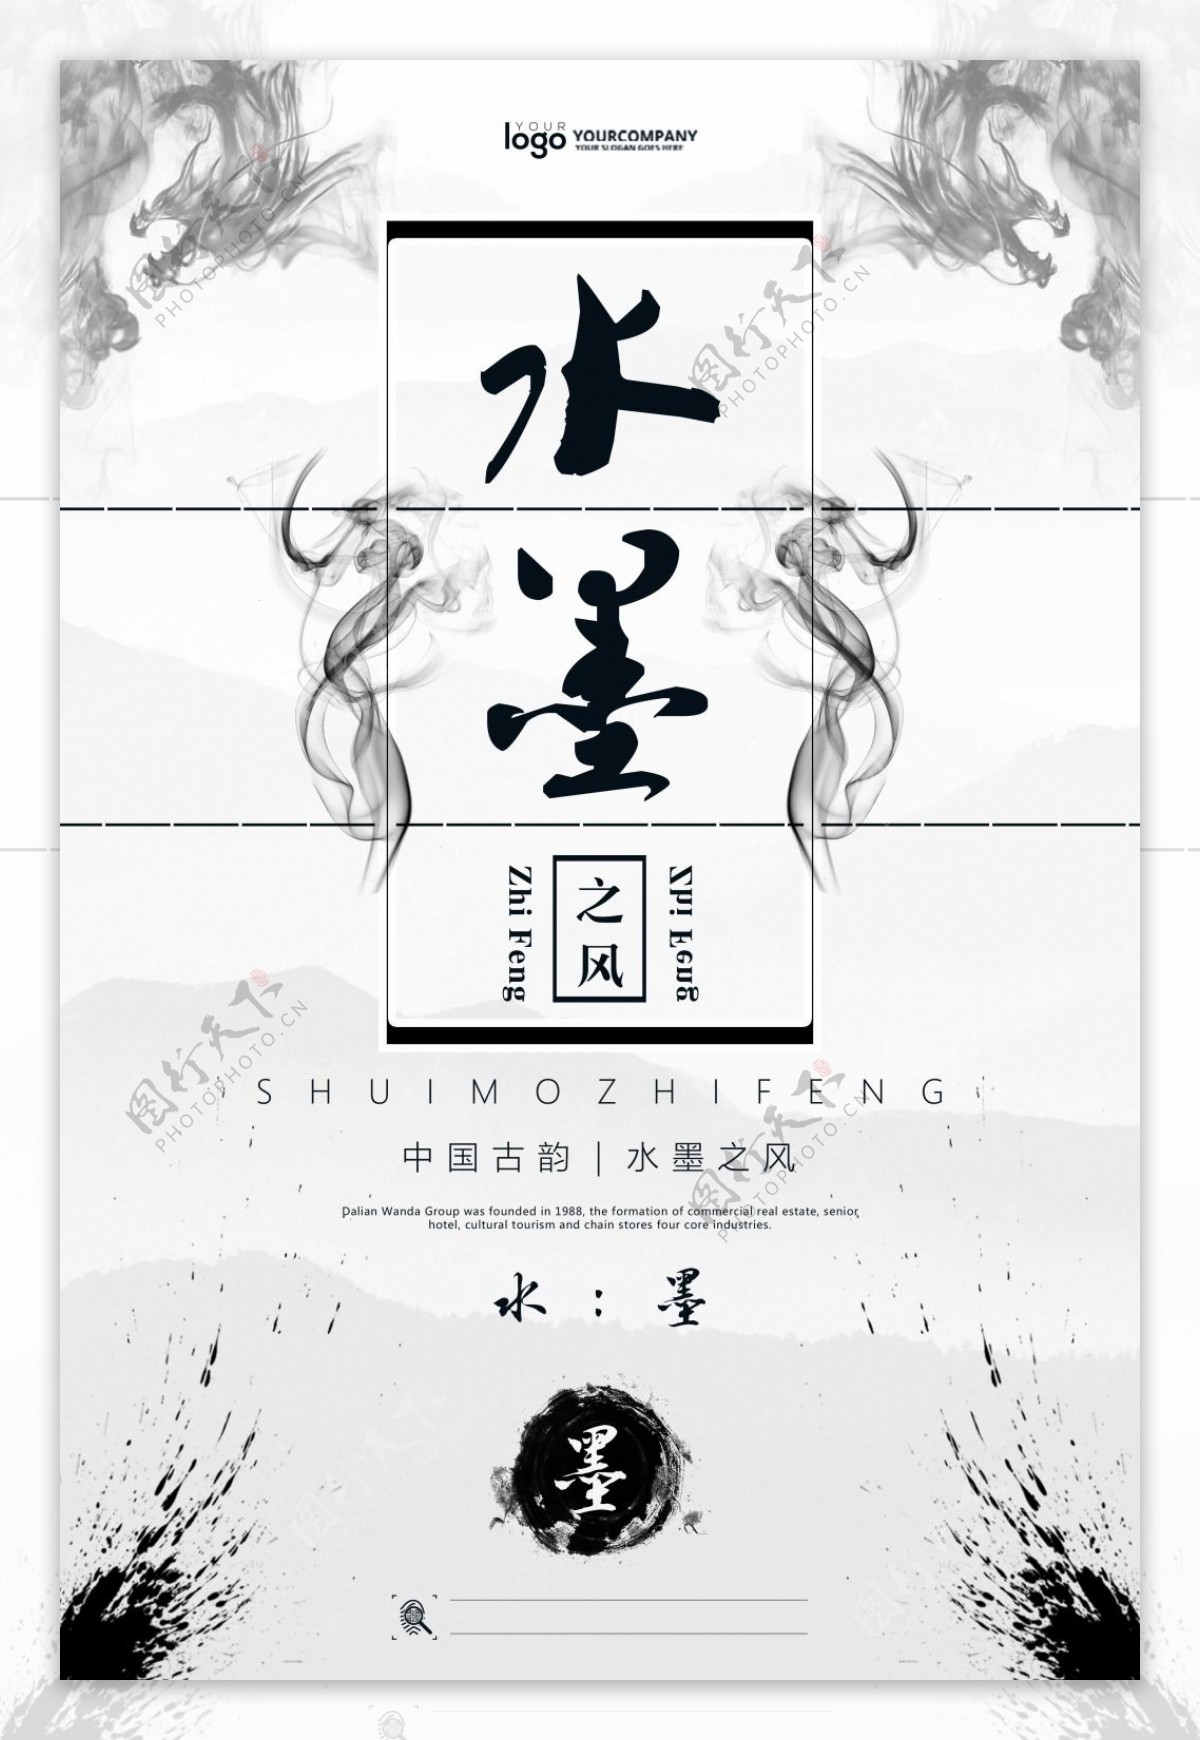 中国风水墨风格创意系列海报设计